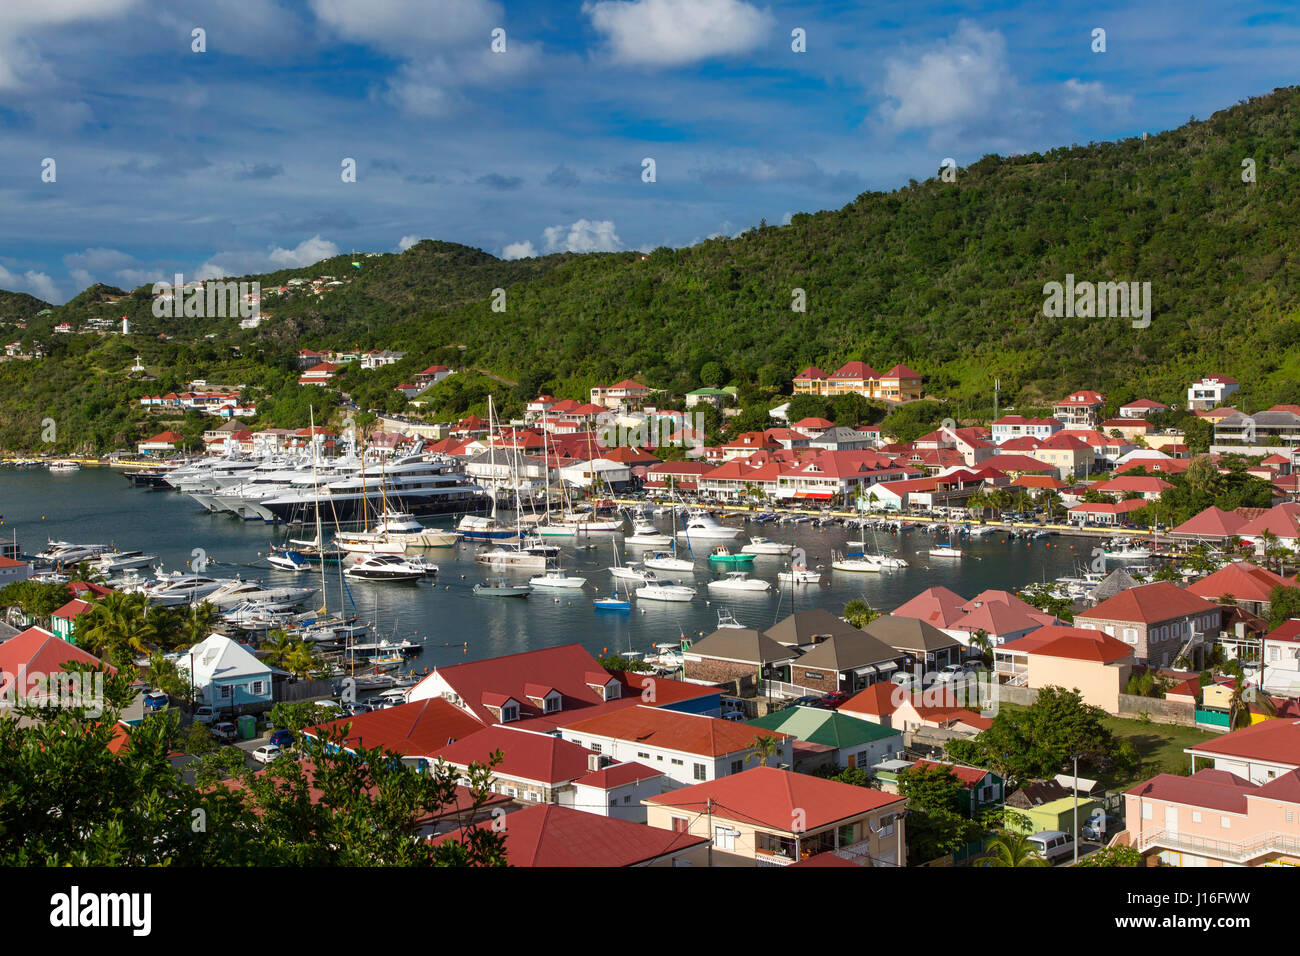 La foule des bateaux de plaisance à Gustavia, St Barths, French West Indies Banque D'Images